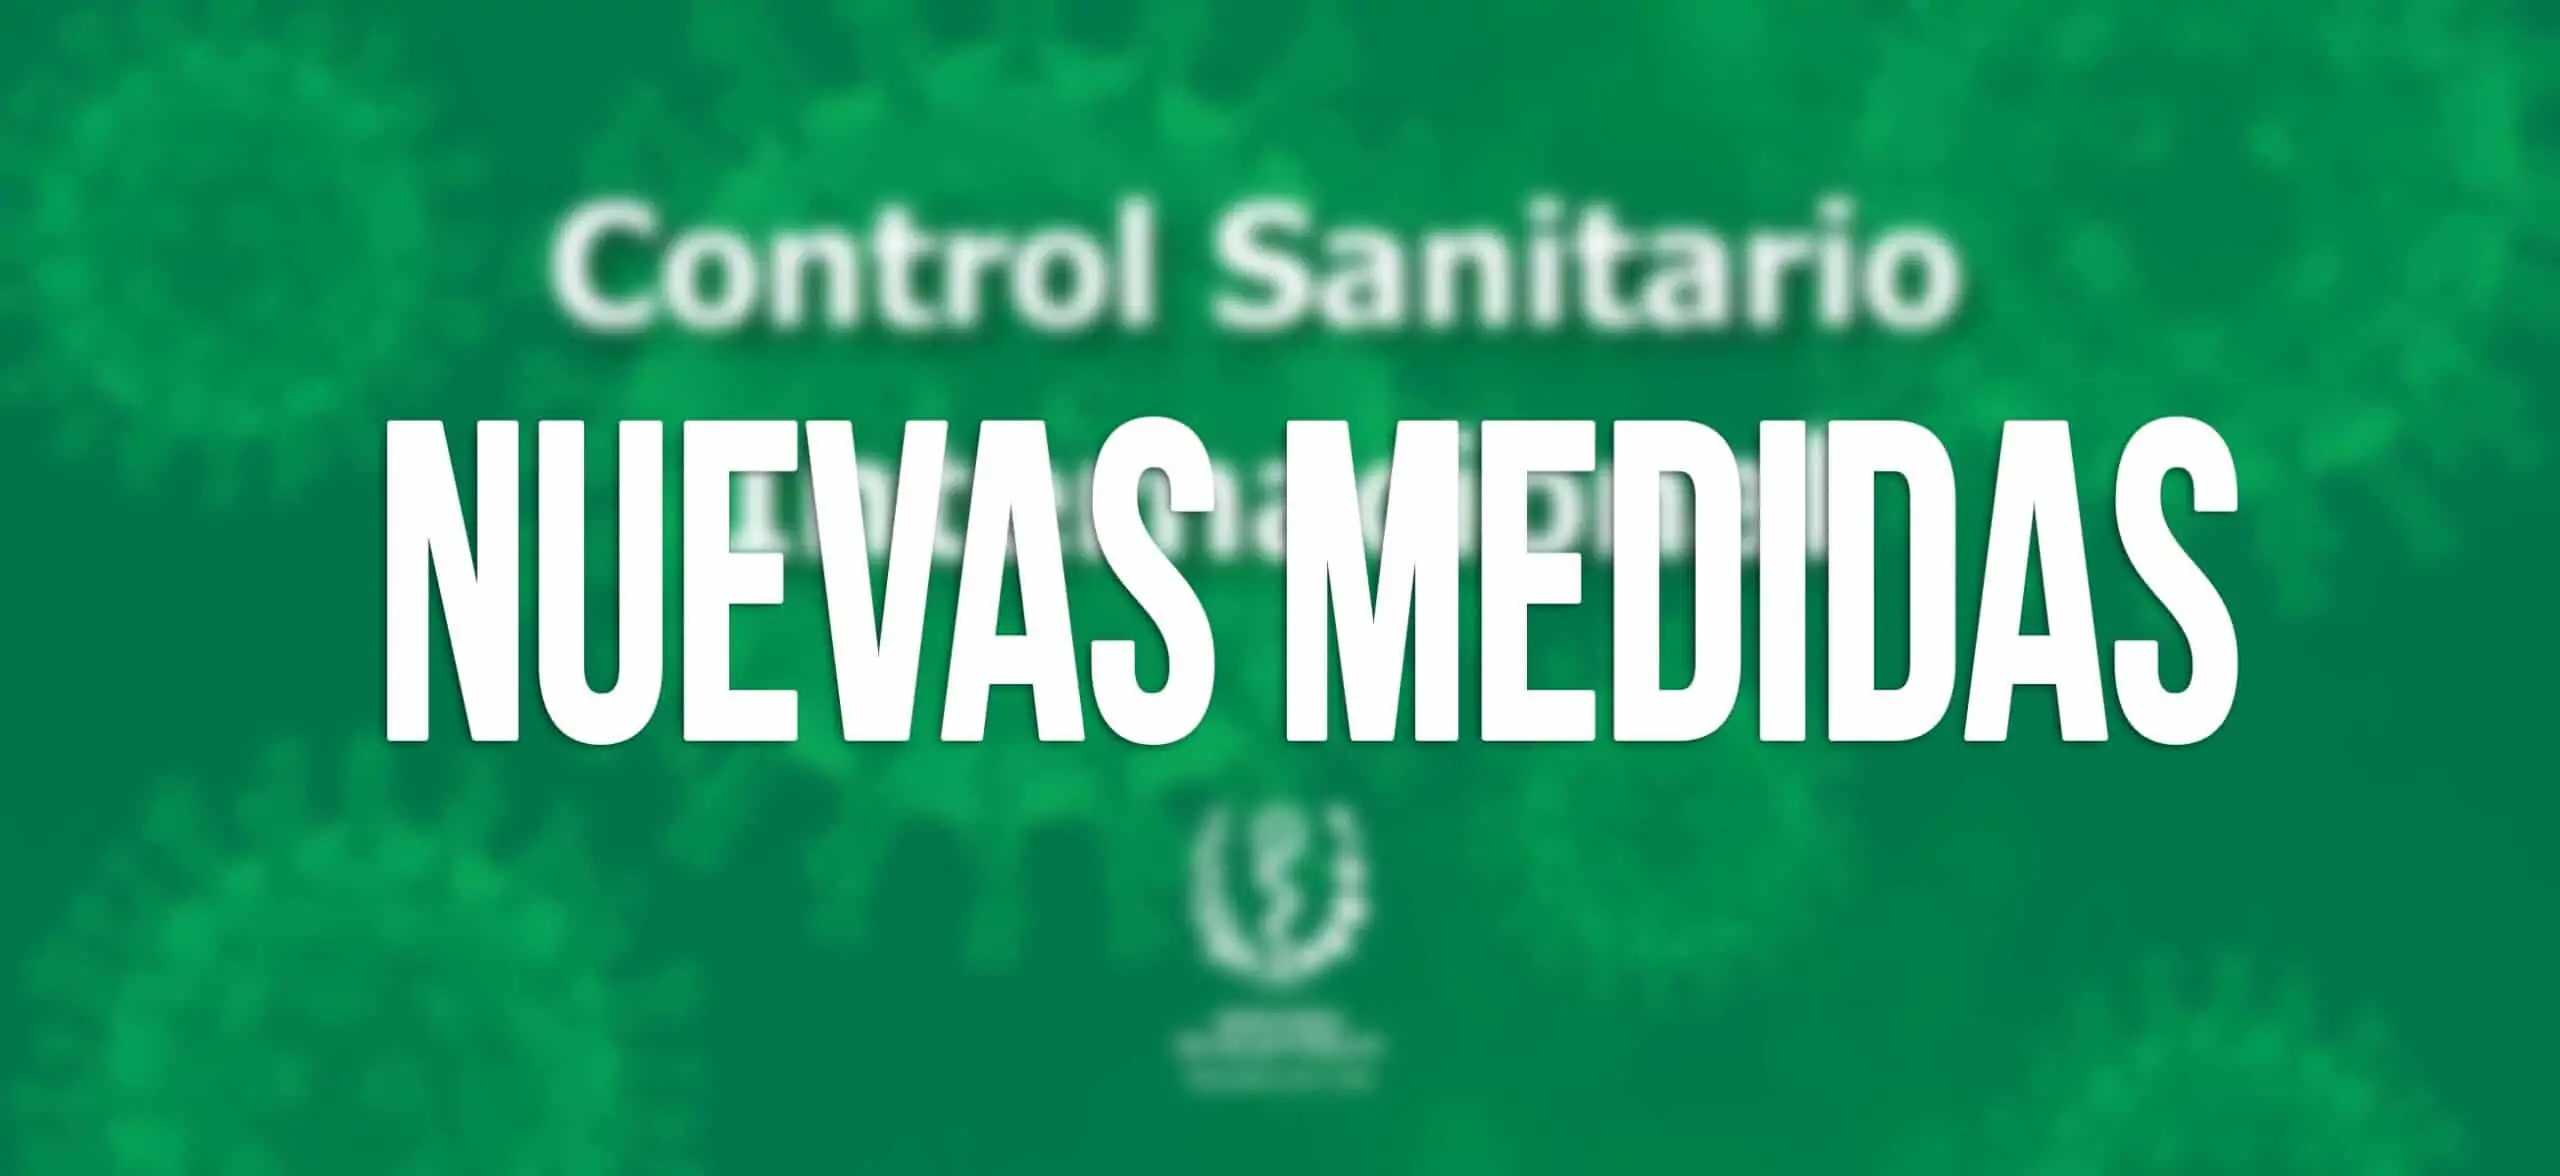 Medidas Control Sanitario Internacional en Cuba